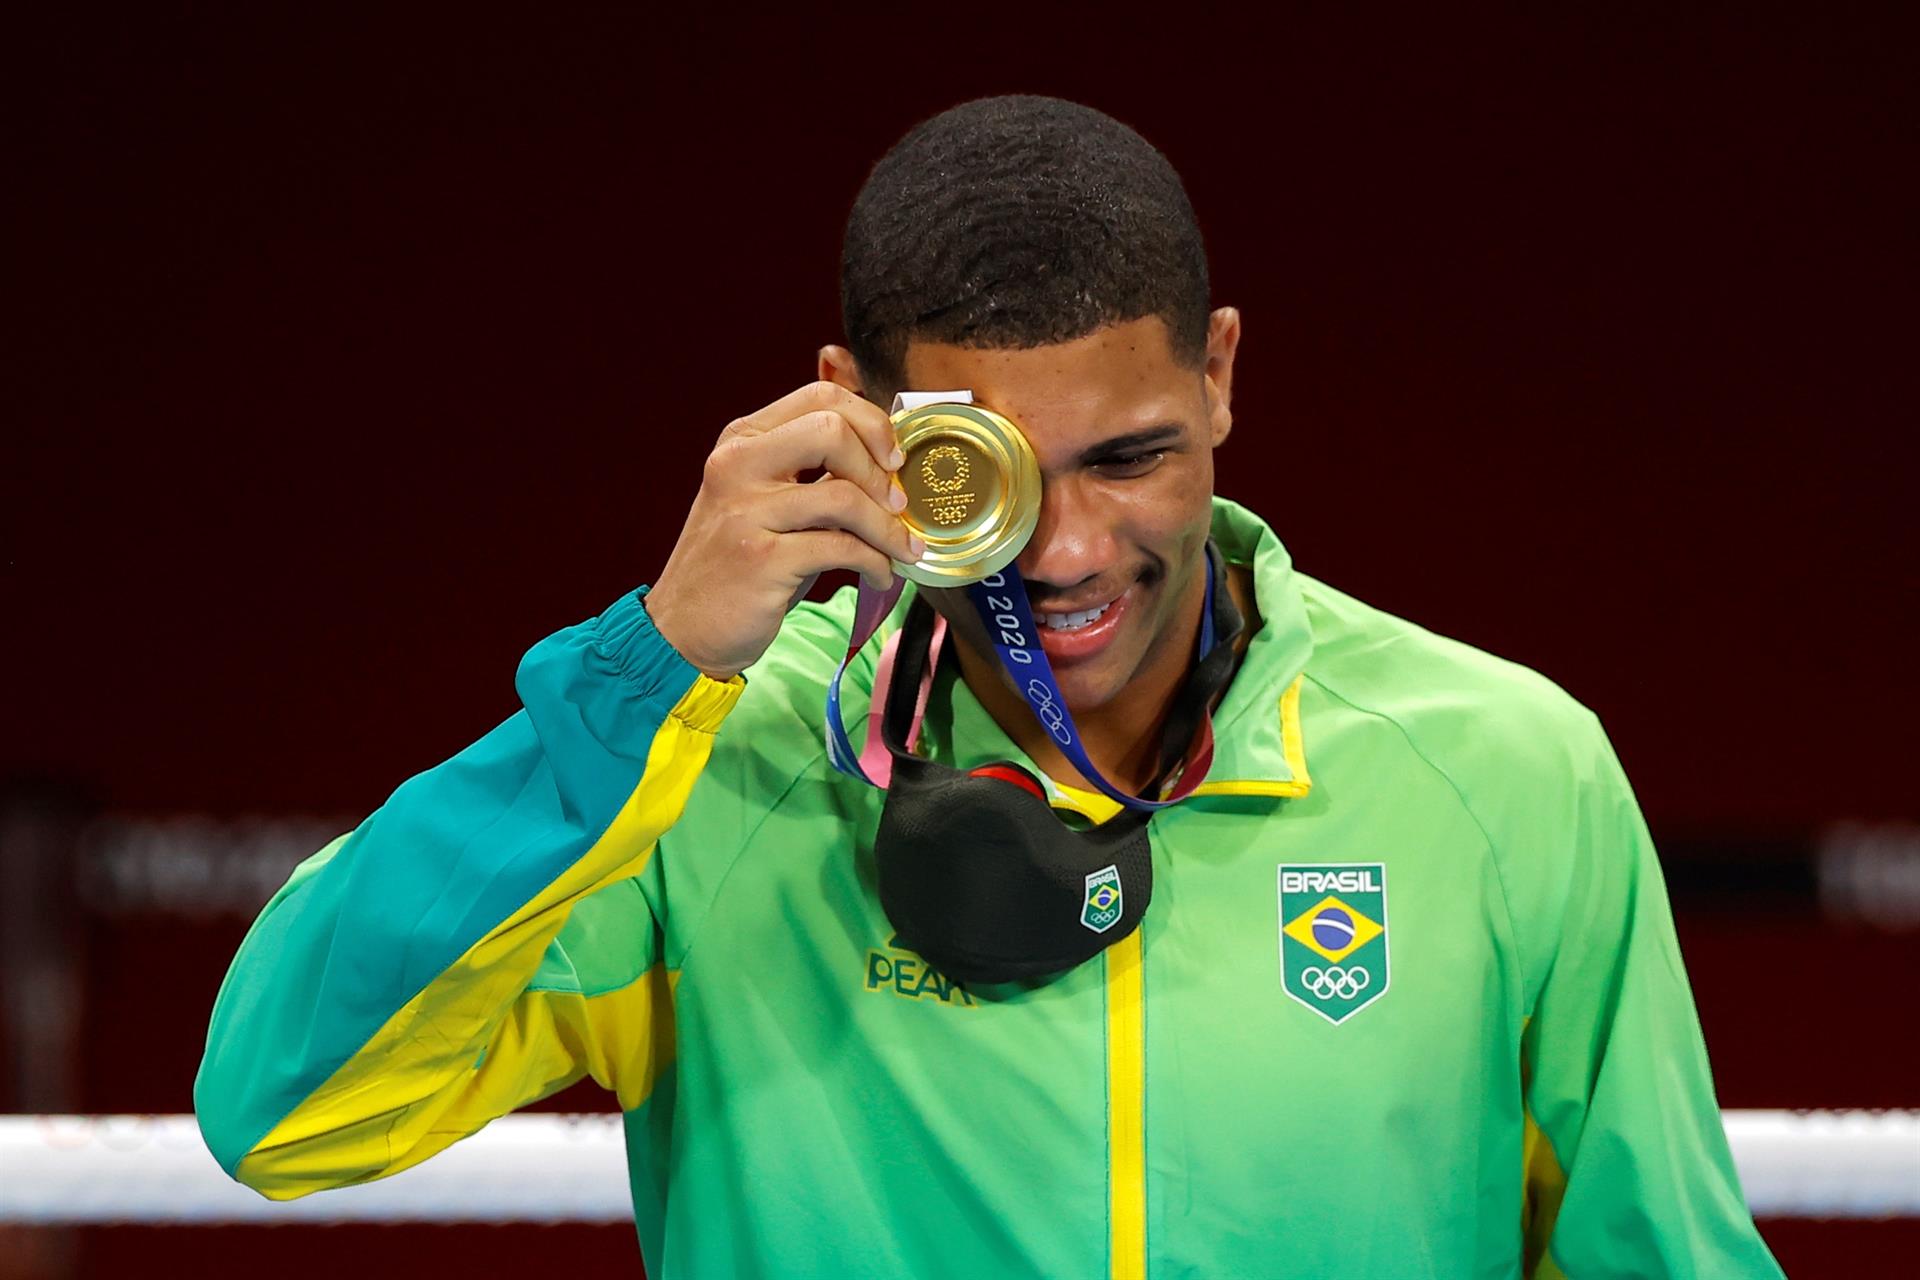 Com agasalho do Brasil, Hebert Conceição coloca medalha de ouro no olho